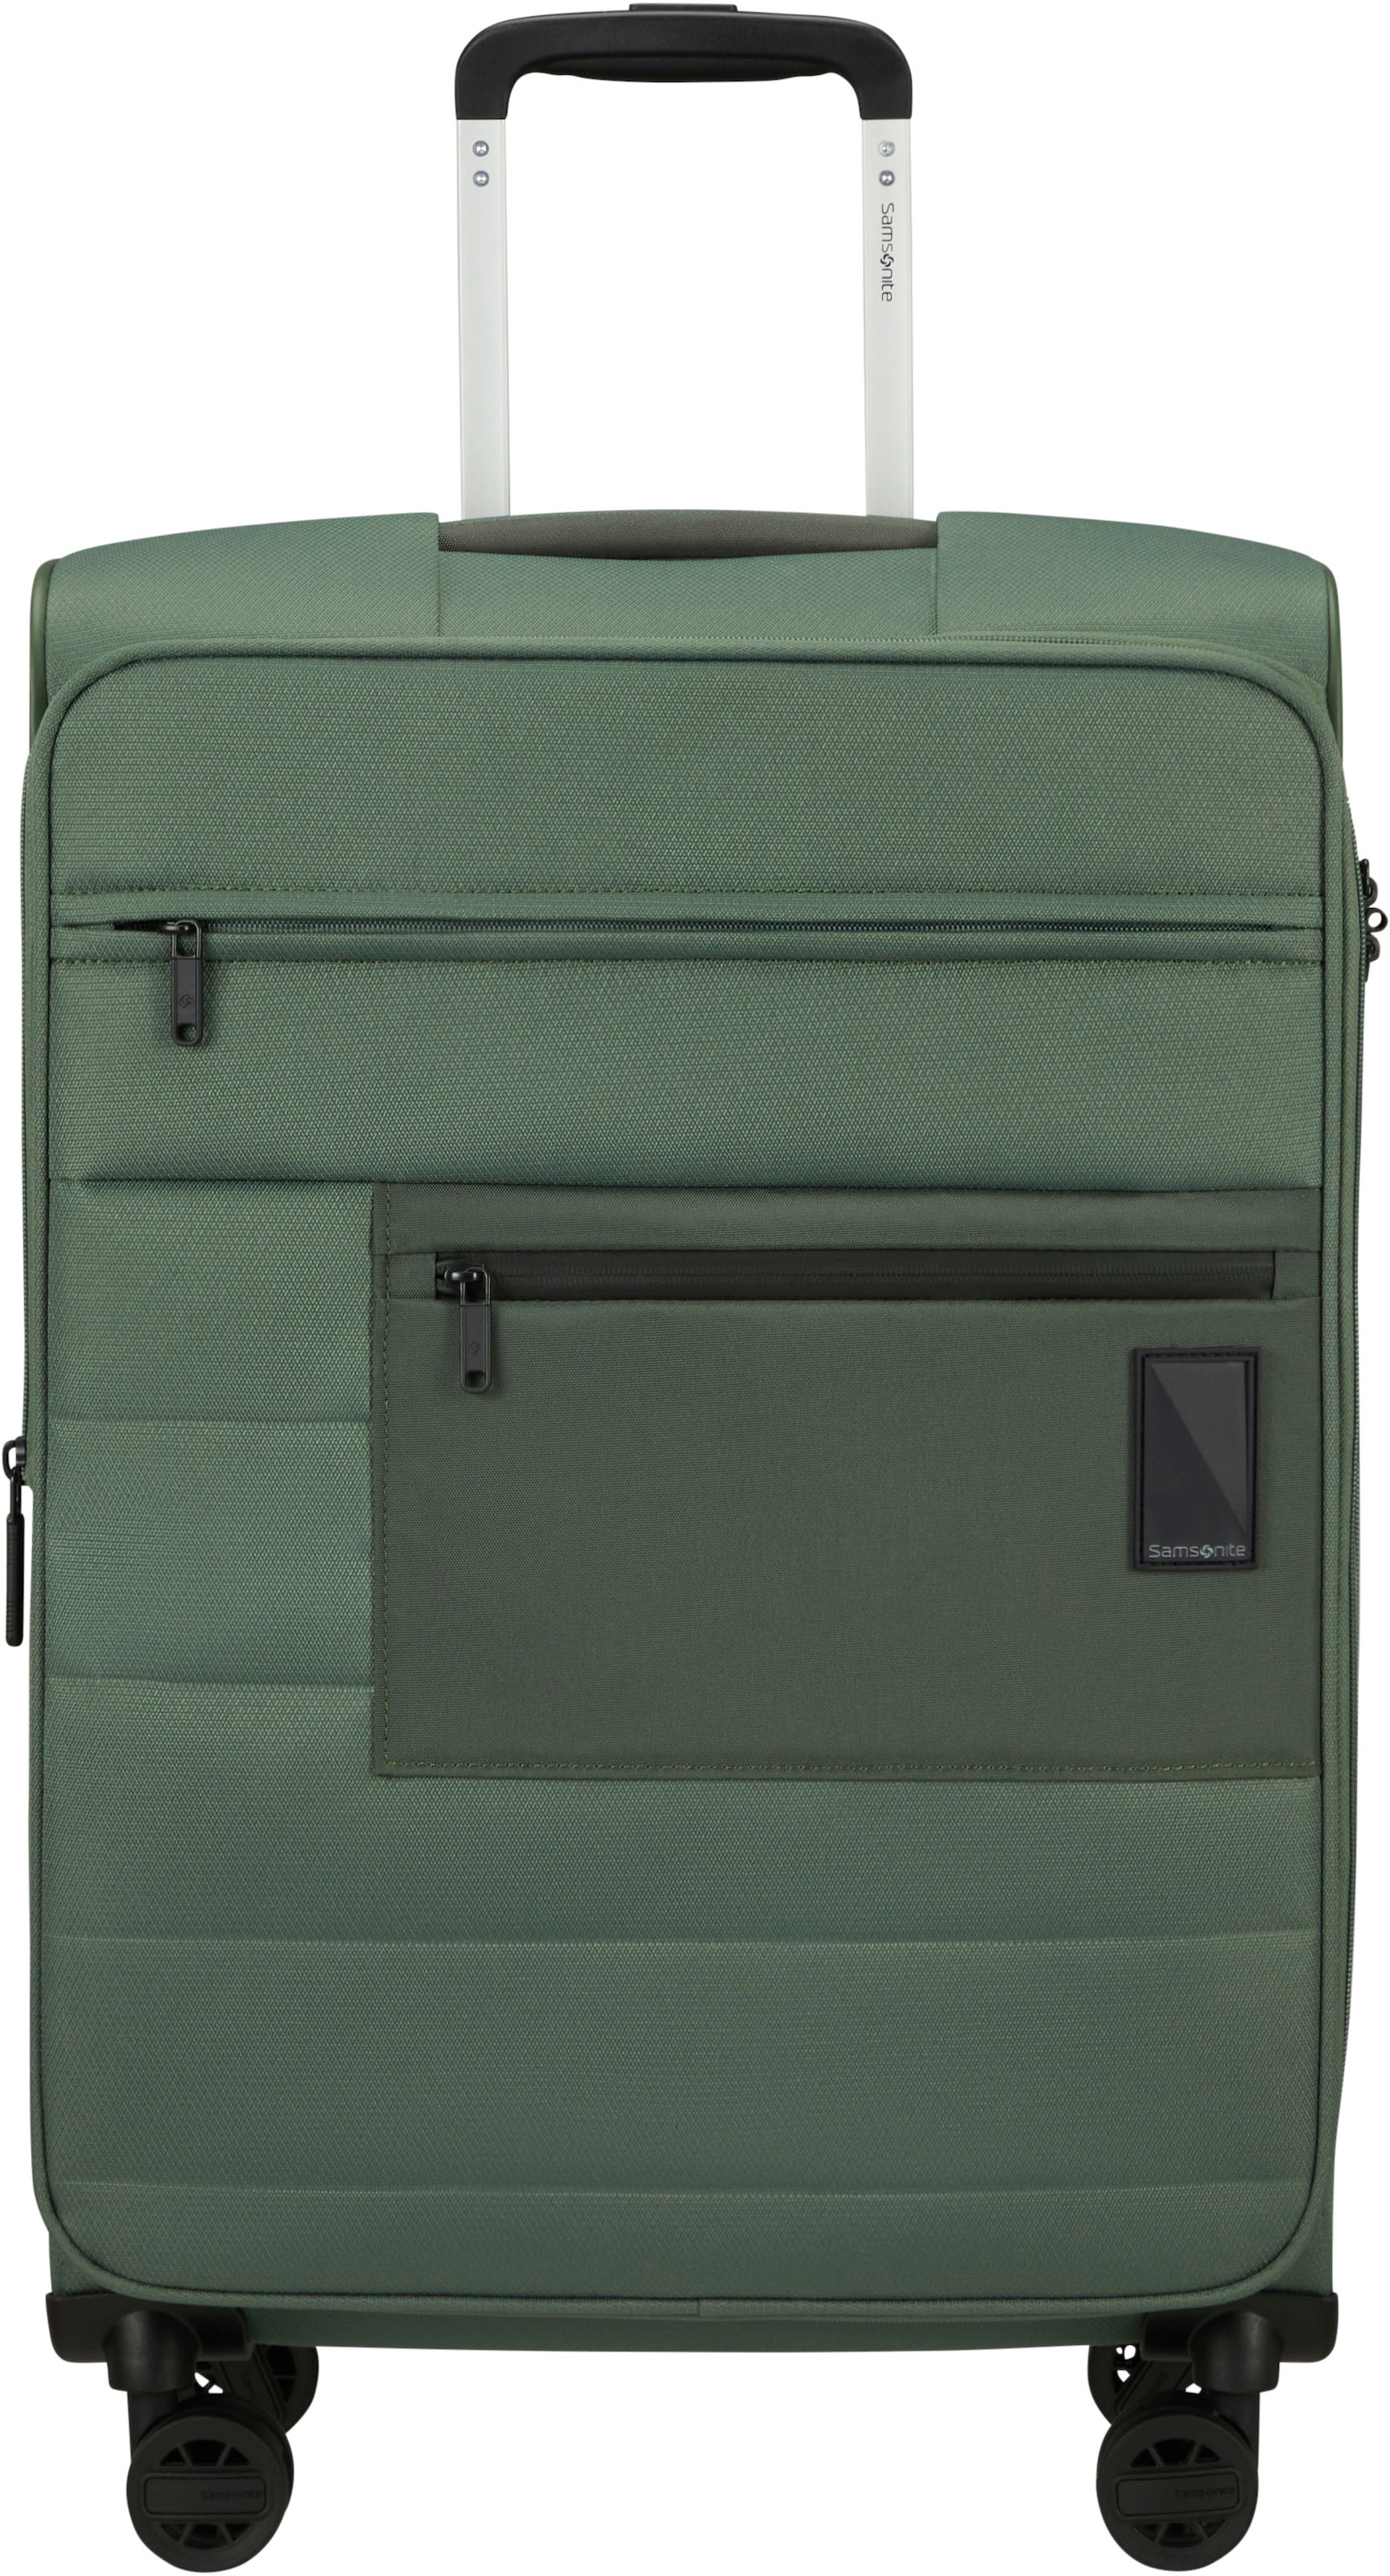 Samsonite Weichgepäck-Trolley »Vacay, pistacho green, 66 cm«, 4 Rollen, Koffer mittel groß Reisegepäck Volumenerweiterung TSA-Zahlenschloss